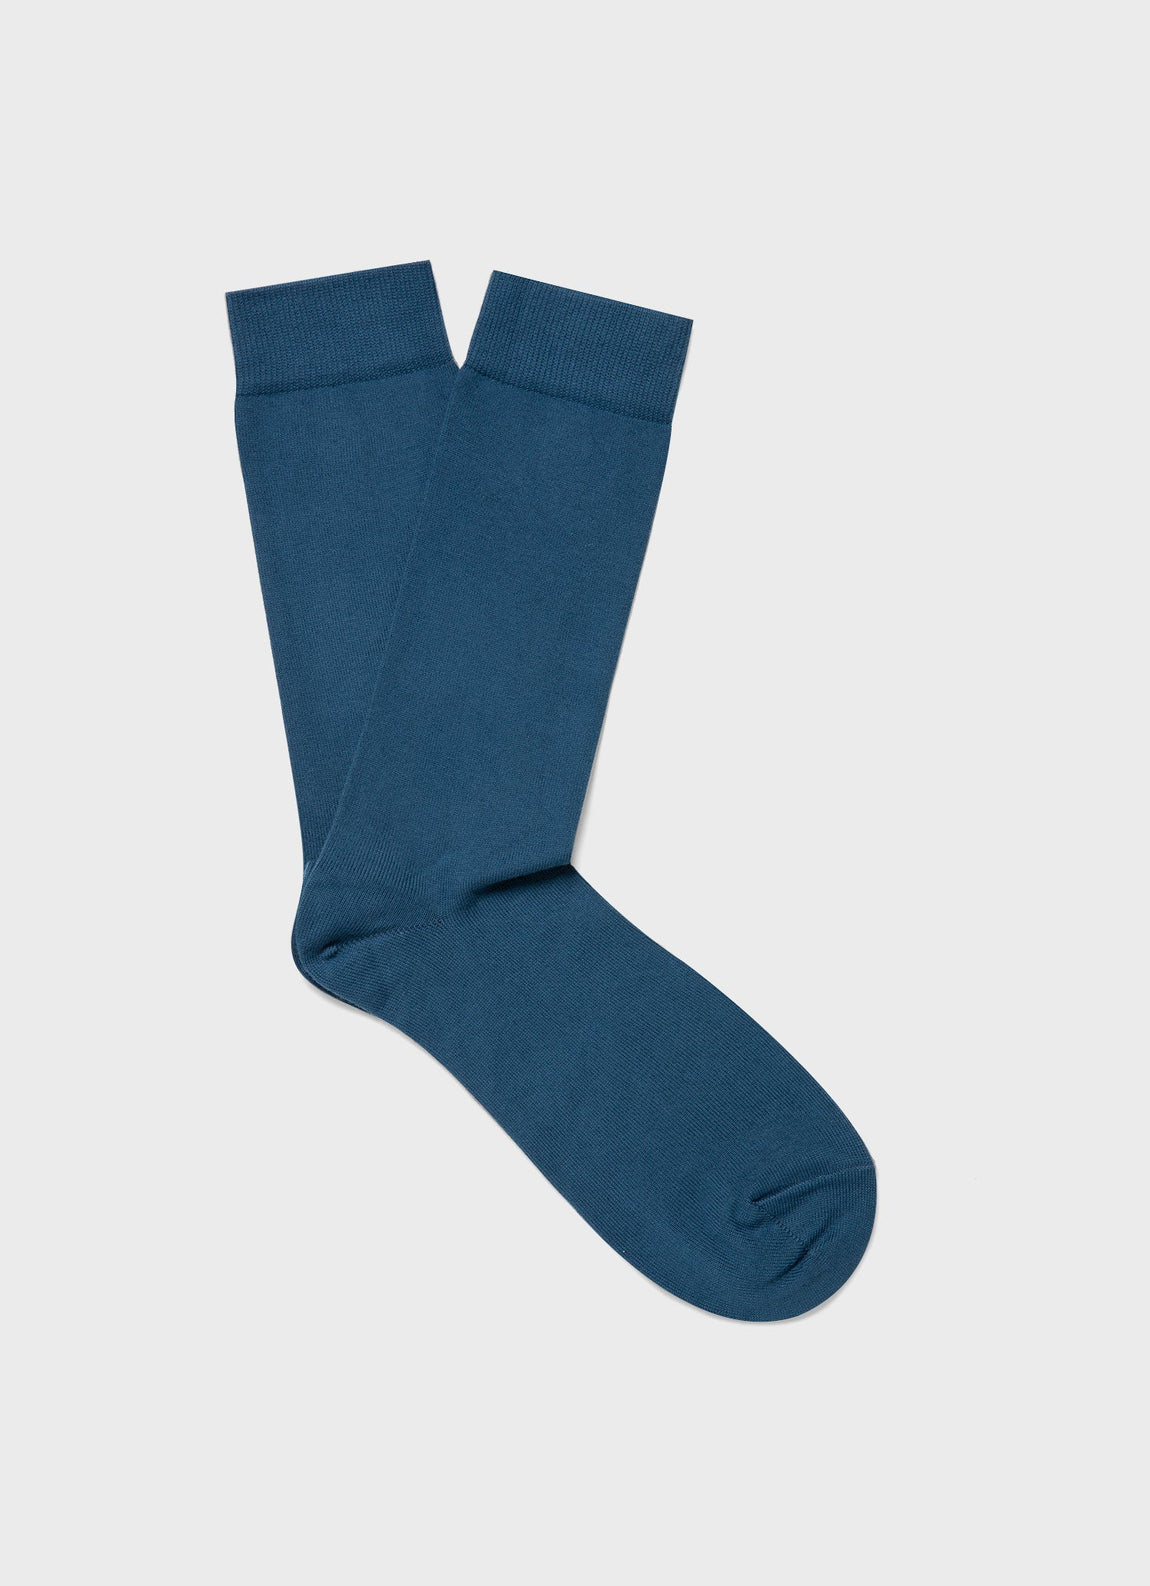 Men's Cotton Socks in Steel Blue